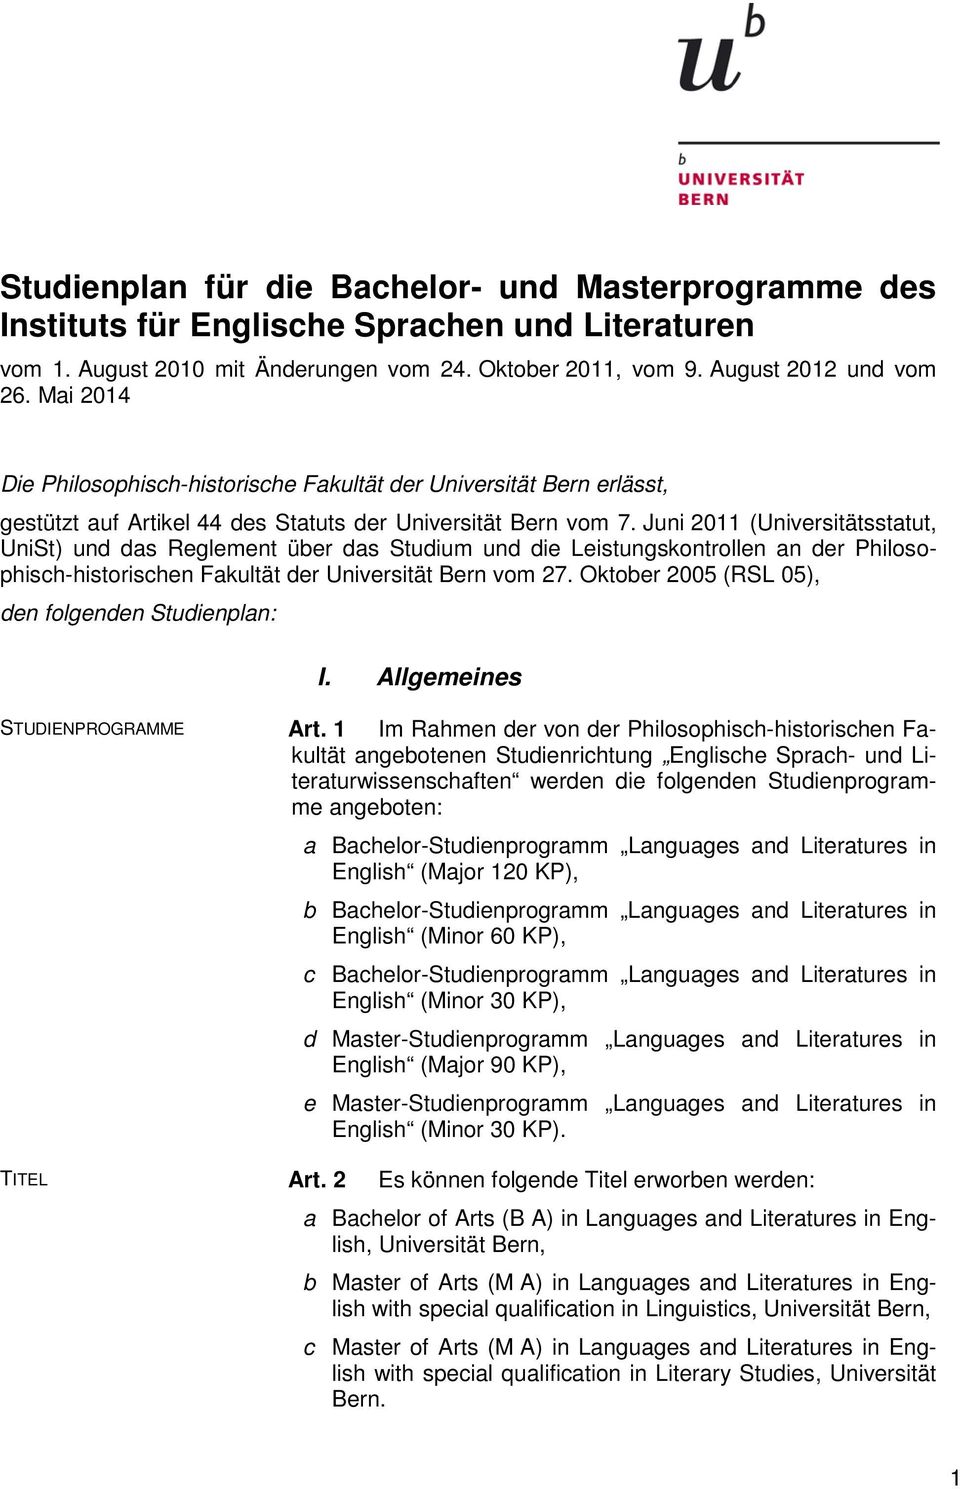 Juni 2011 (Universitätsstatut, UniSt) und das Reglement über das Studium und die Leistungskontrollen an der Philosophisch-historischen Fakultät der Universität Bern vom 27.